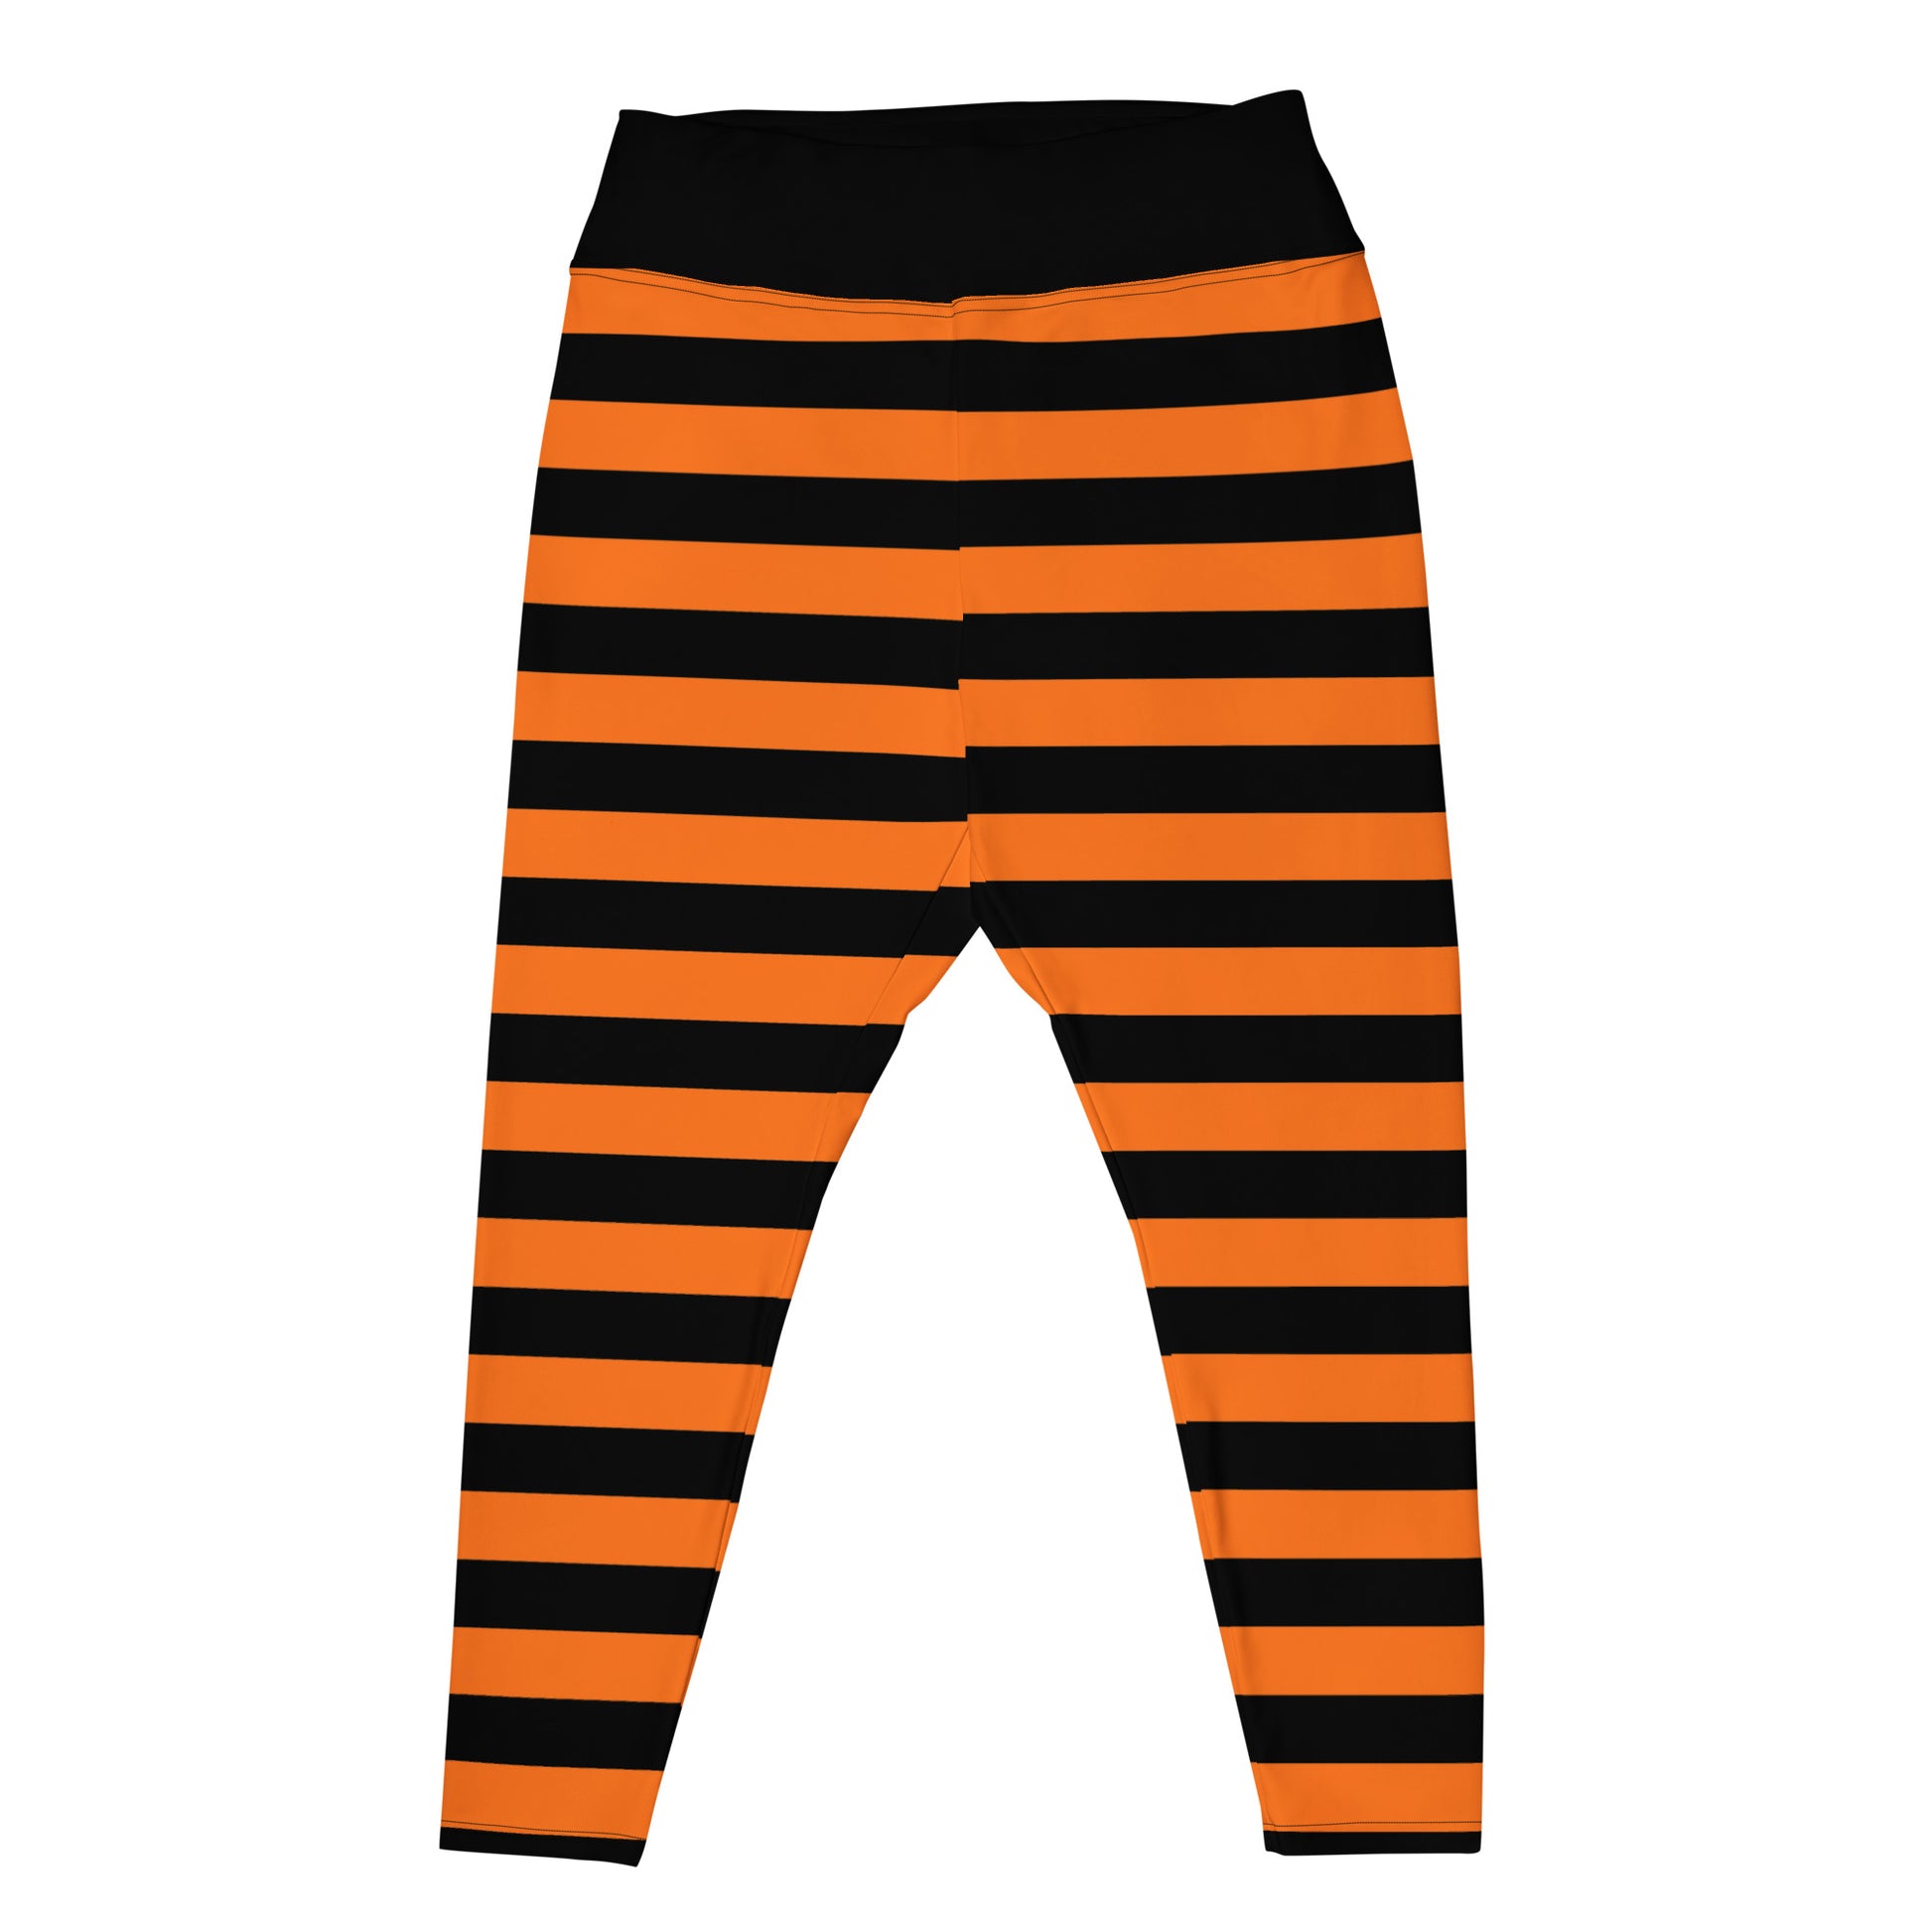 Lularoe One Size OS Zig Zag Stripe Orange Black Leggings (OS fits Adults  2-10) at  Women's Clothing store